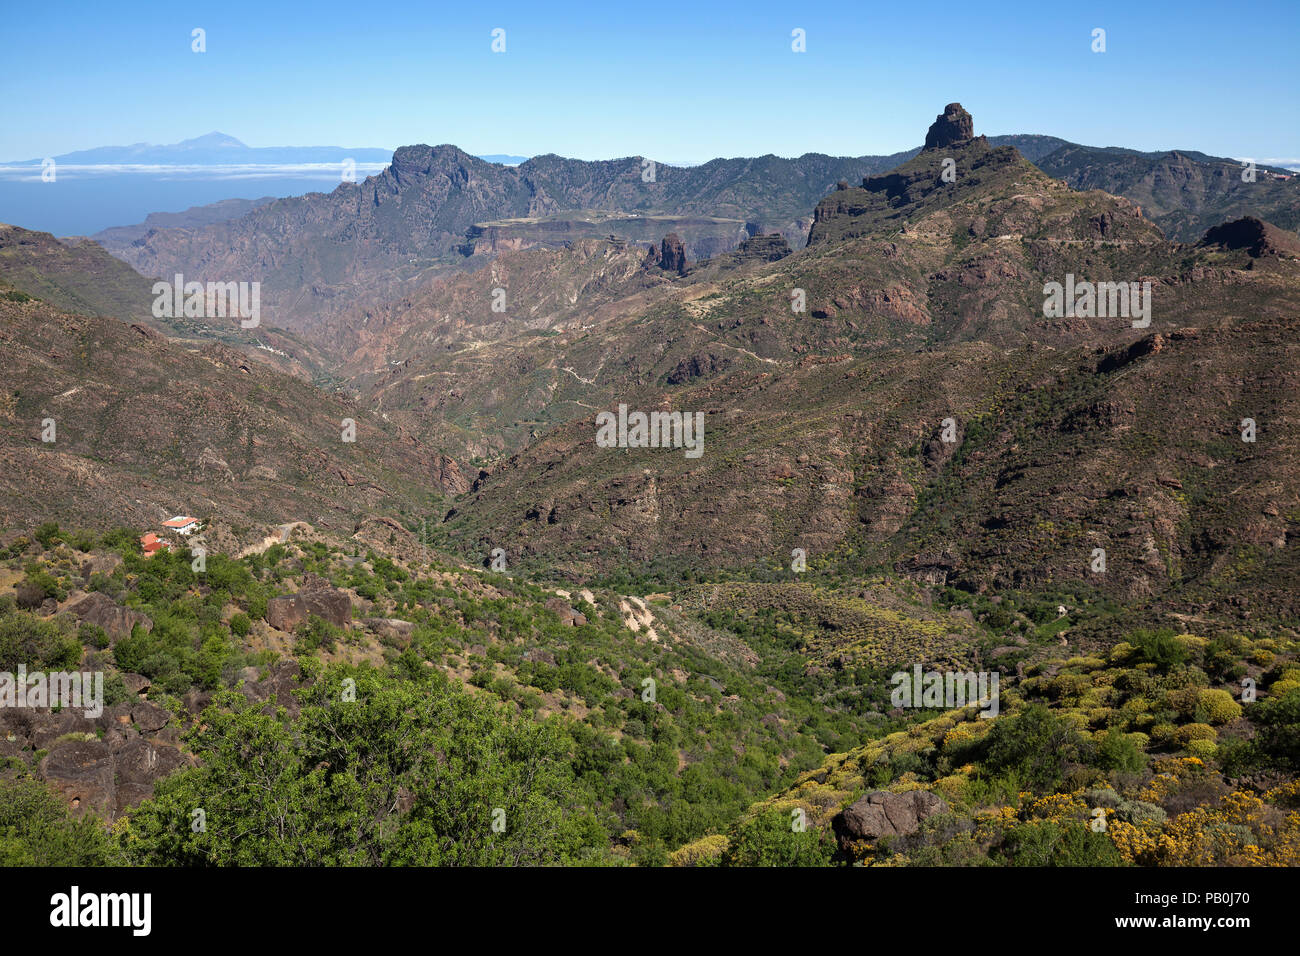 Vista dalla strada GC60 nel Barranco del Chorrillo a Tejeda, dietro l'isola di Tenerife con il vulcano Teide, montagna di Altavista Foto Stock